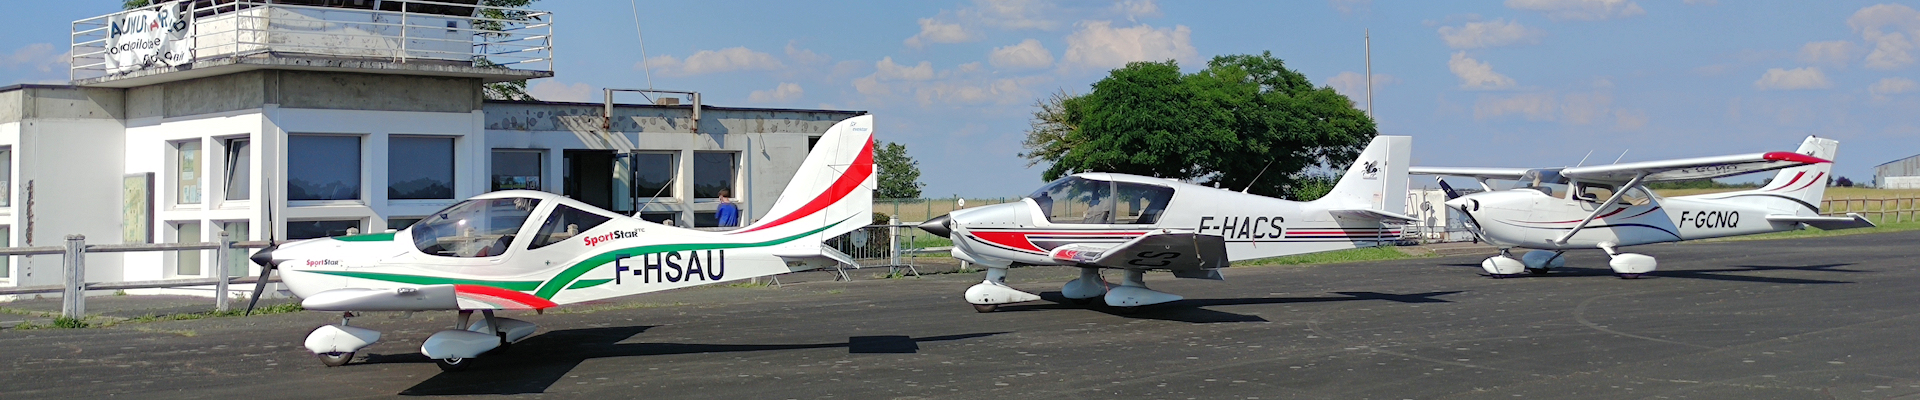 Saumur Air Club Cessna 172 DR400